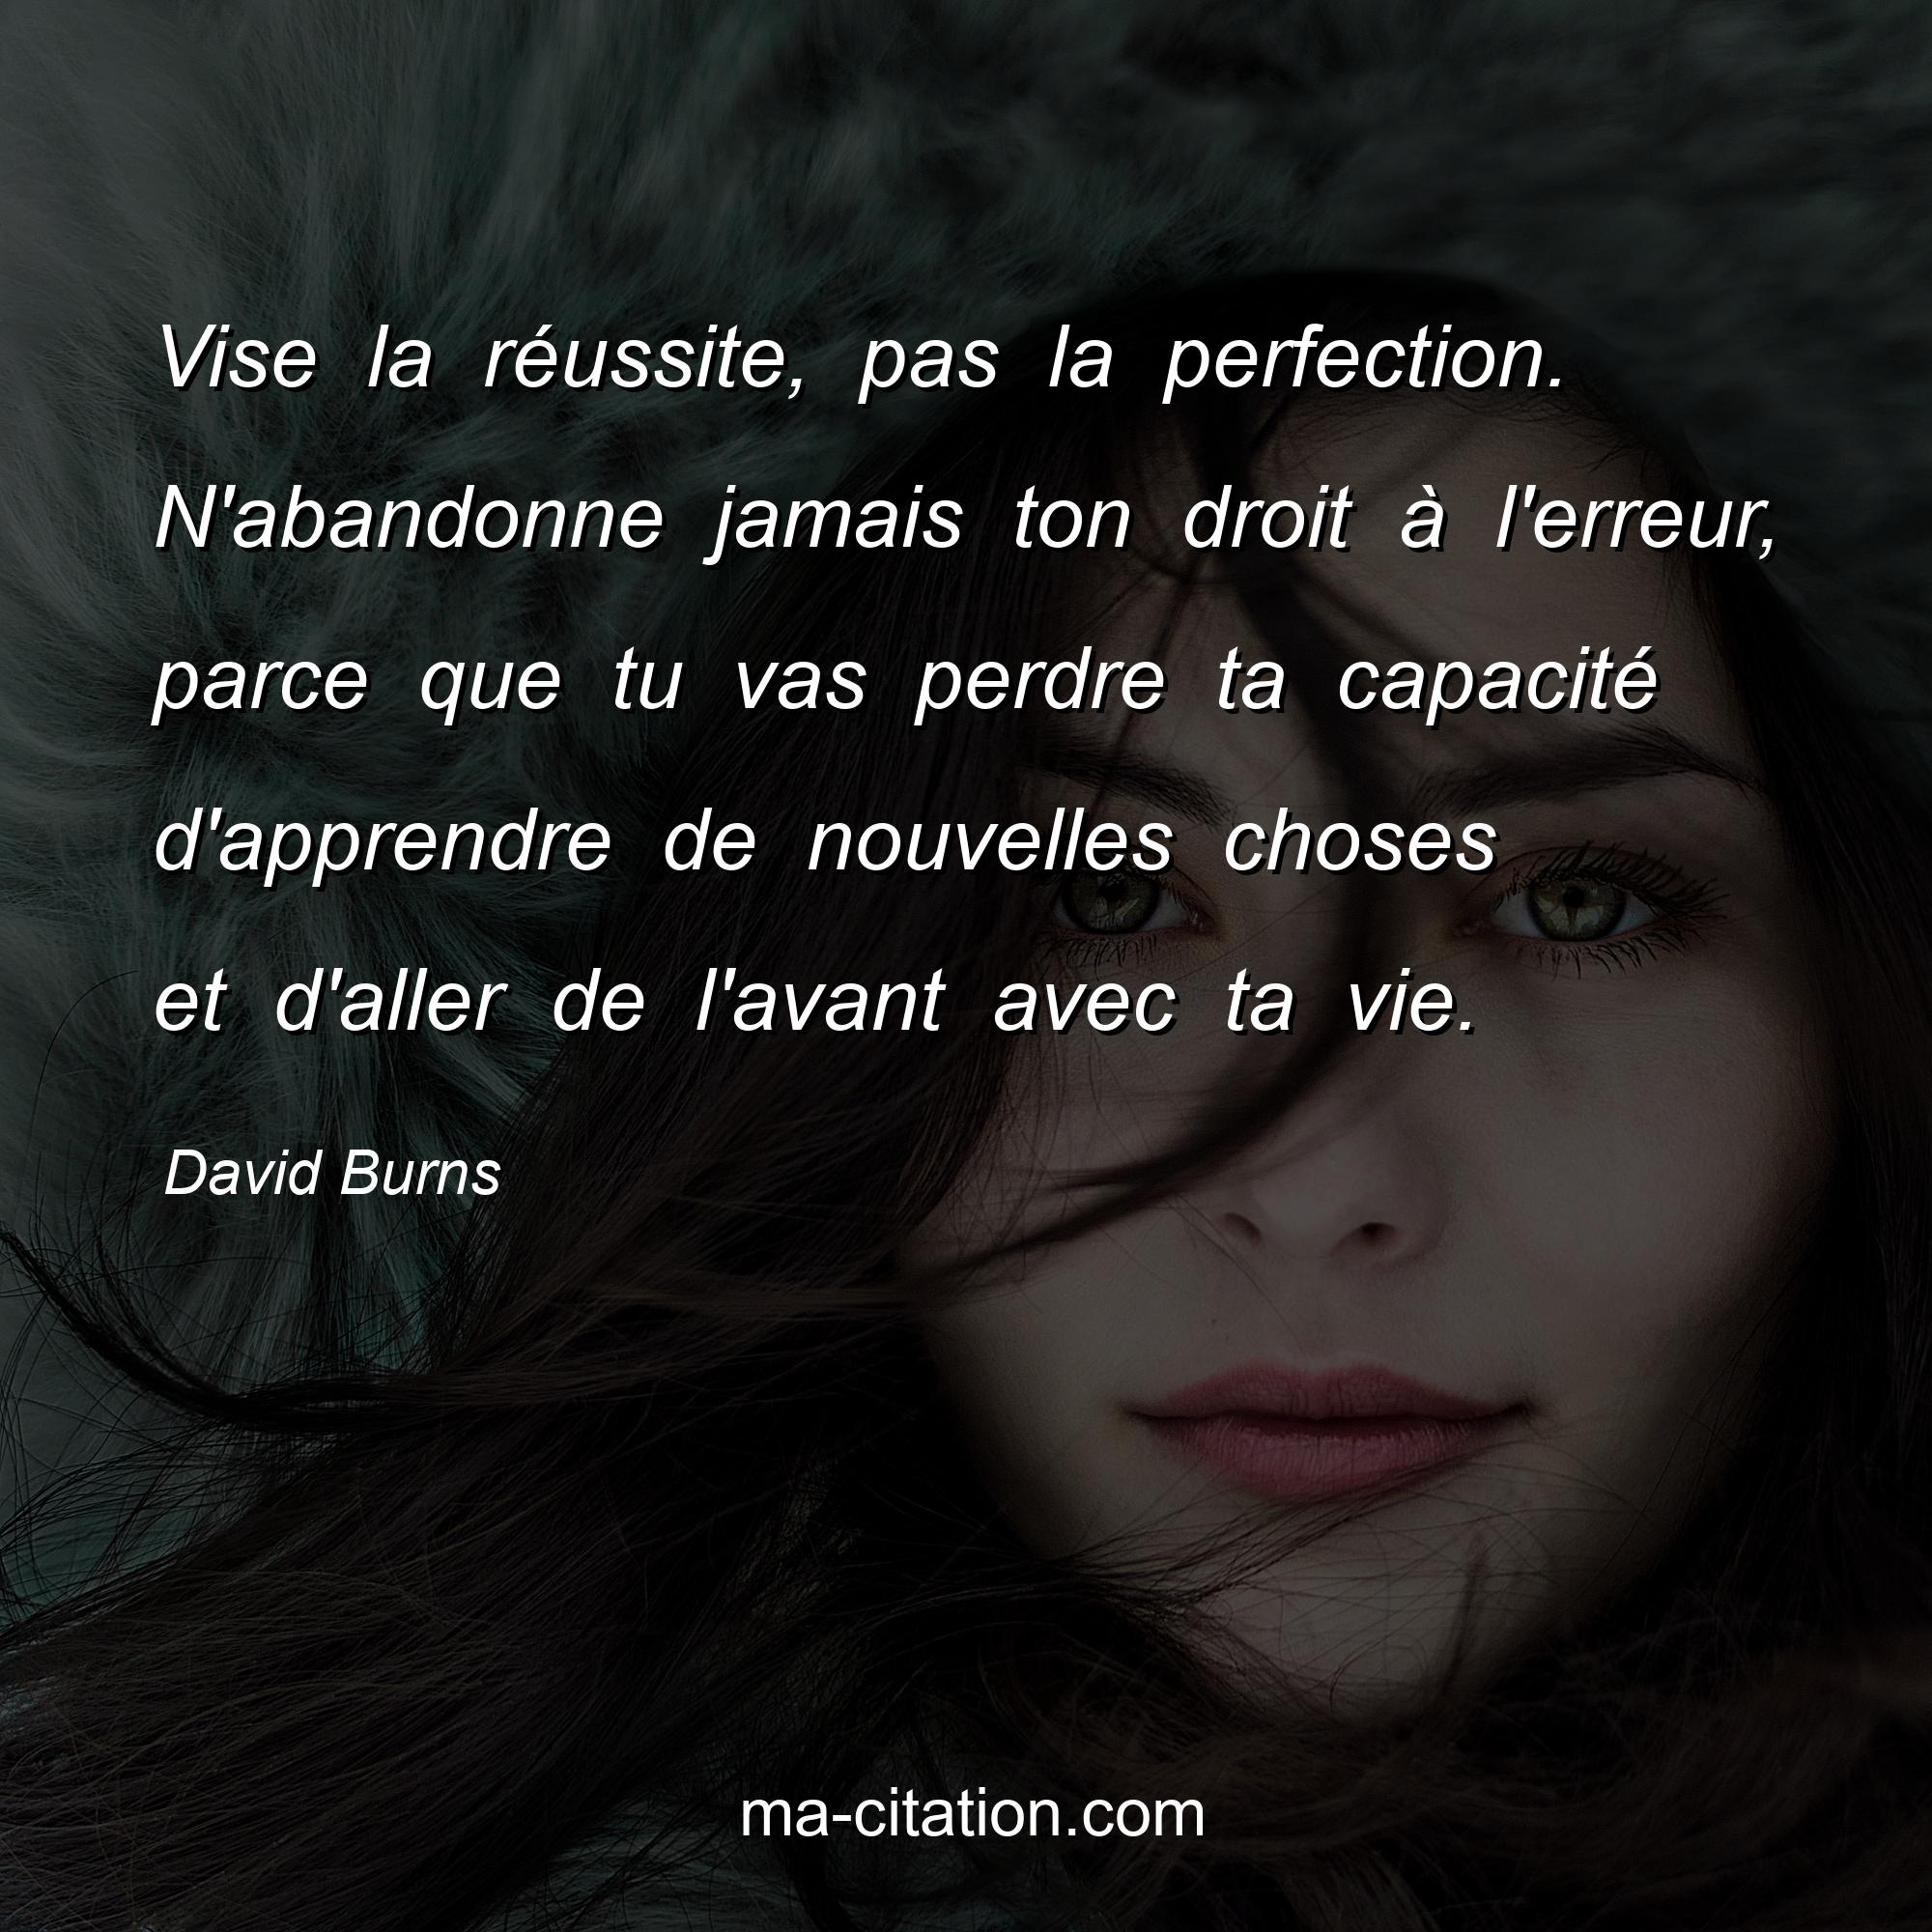 David Burns : Vise la réussite, pas la perfection. N'abandonne jamais ton droit à l'erreur, parce que tu vas perdre ta capacité d'apprendre de nouvelles choses et d'aller de l'avant avec ta vie.